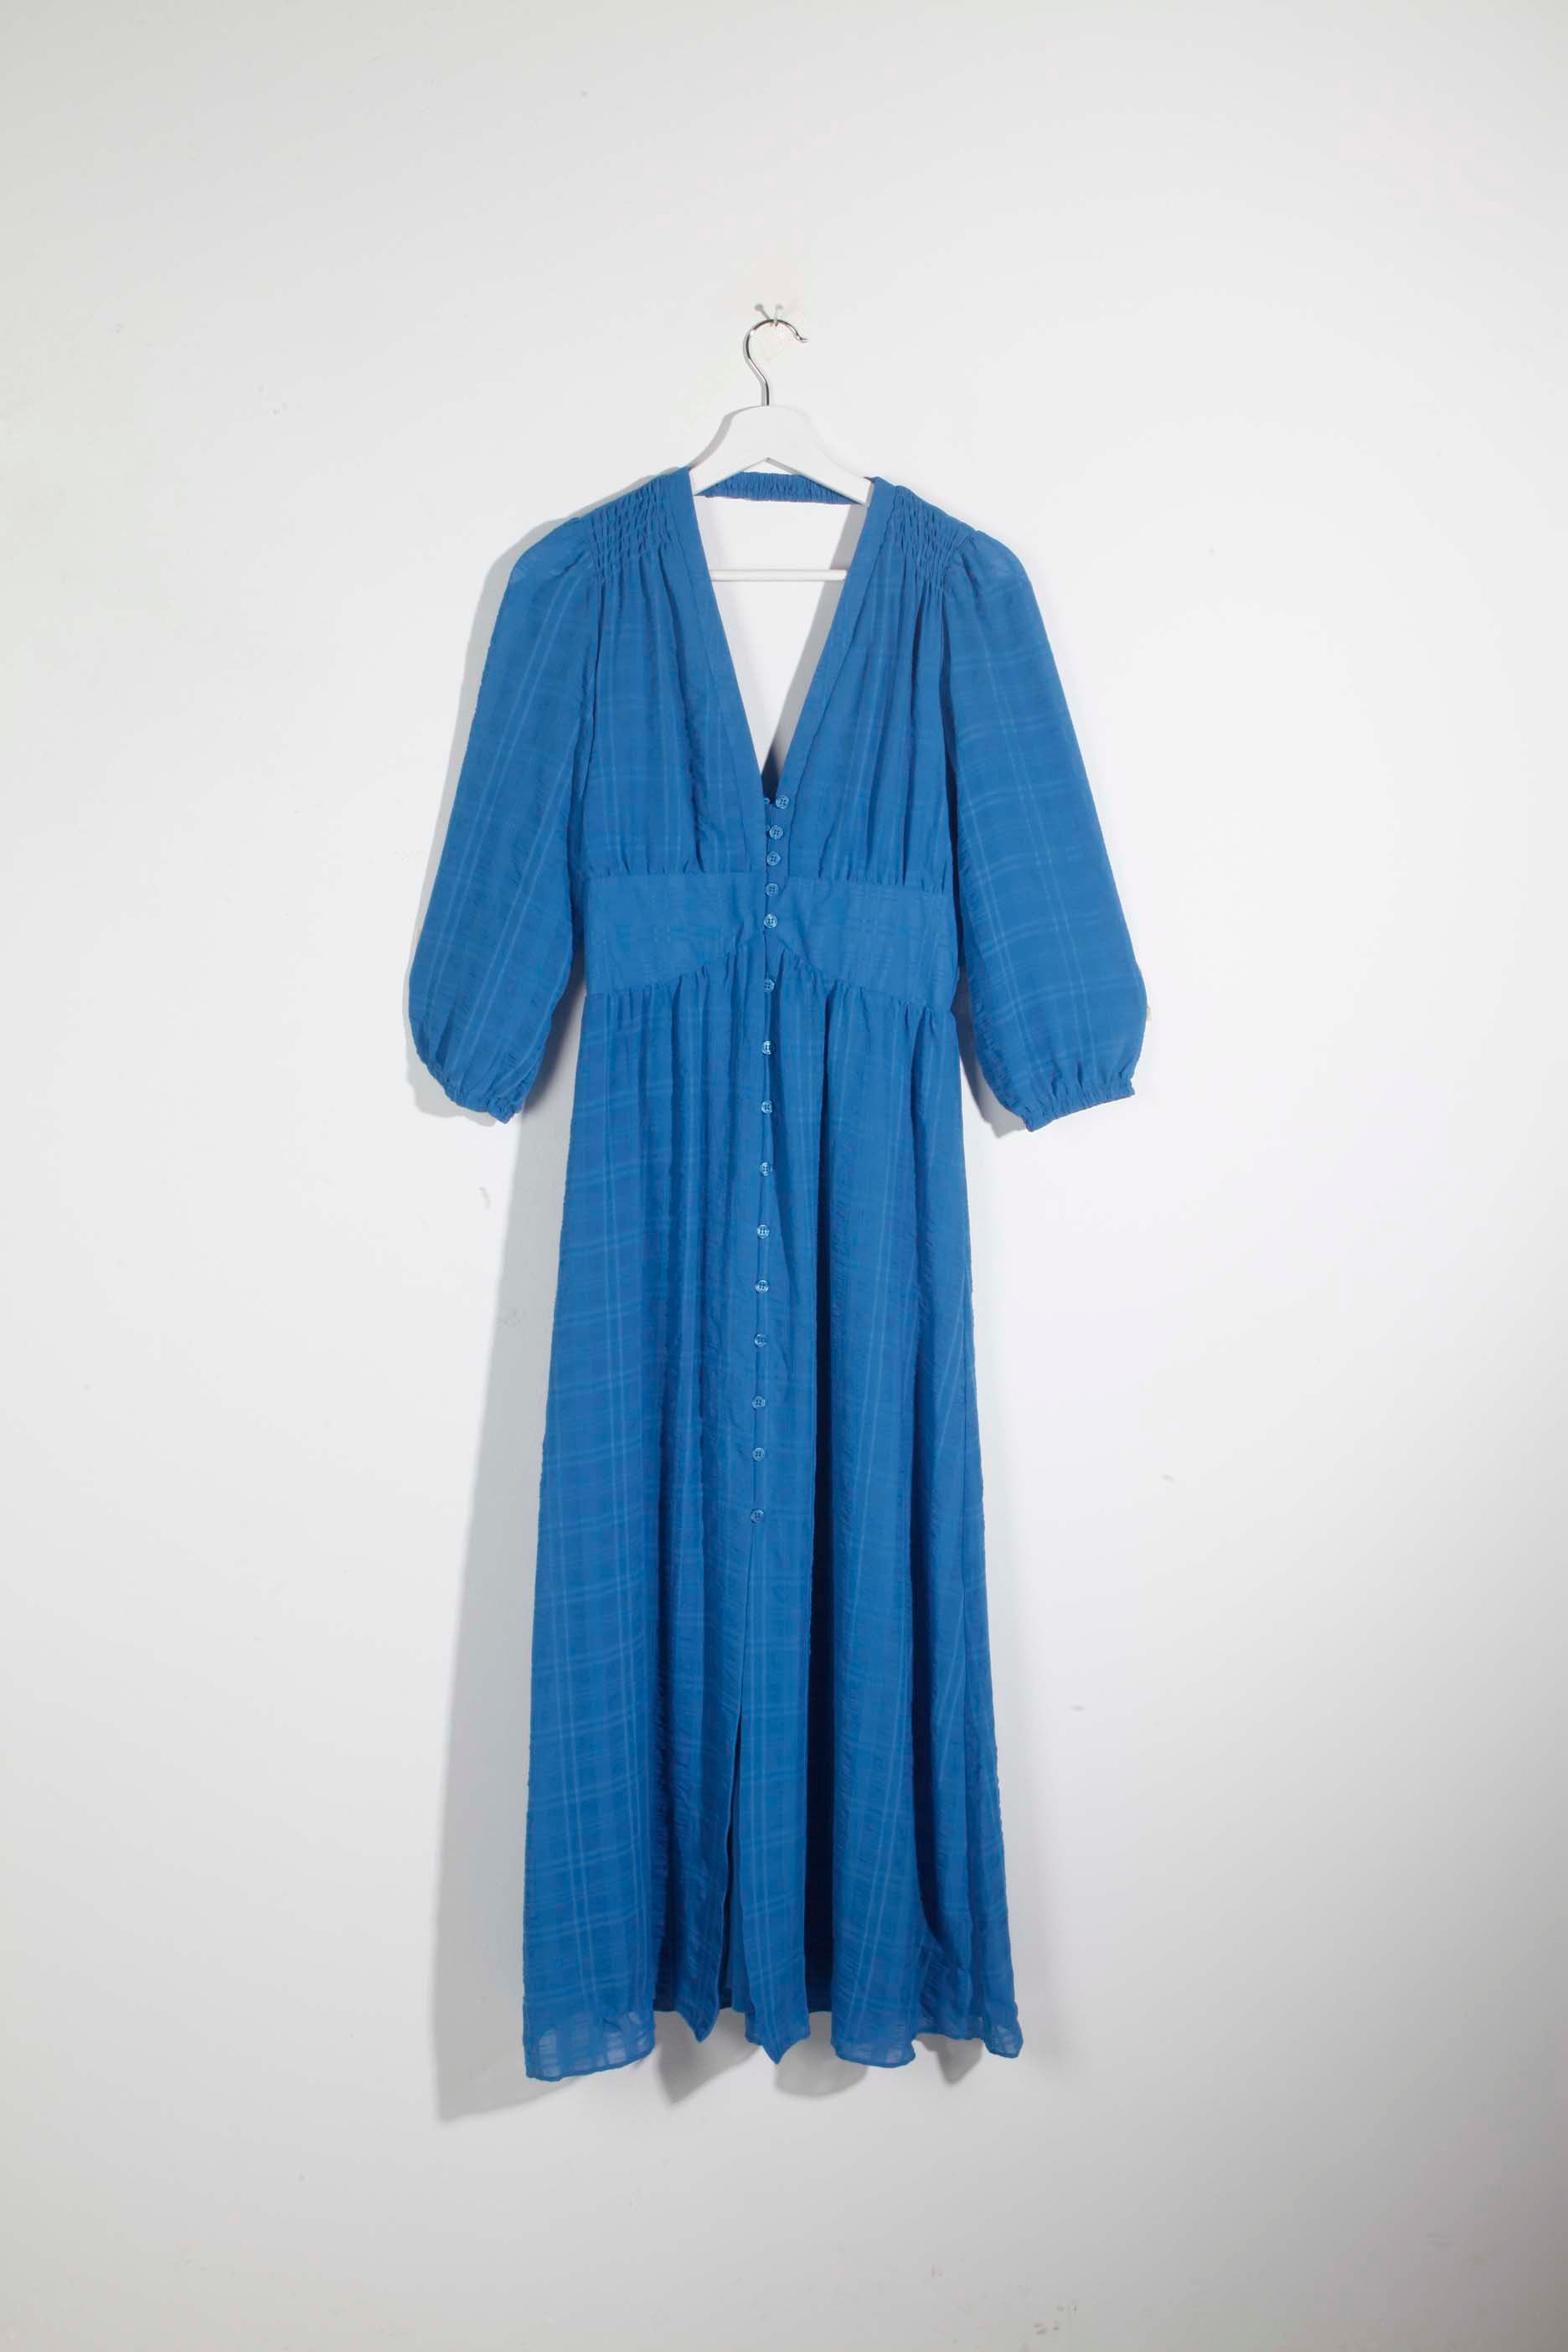 Blue Prairie Dress (Eu36)